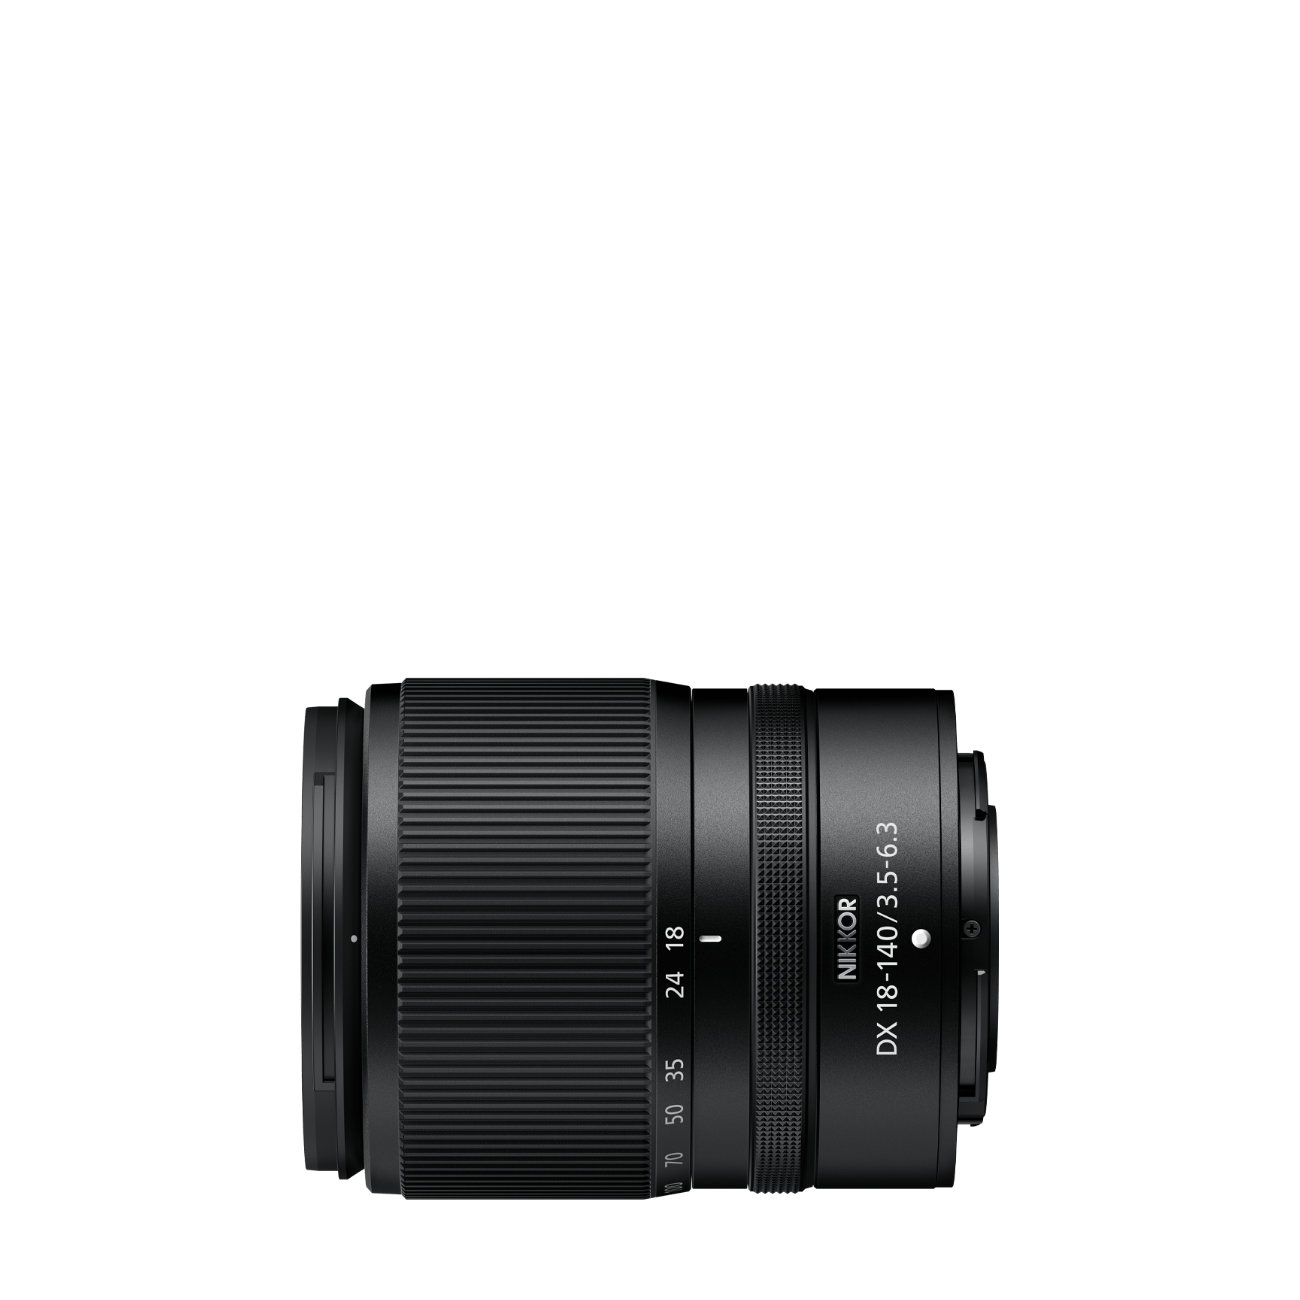 Nikon Z 30 + DX 18-140mm 3.5-6.3 VR